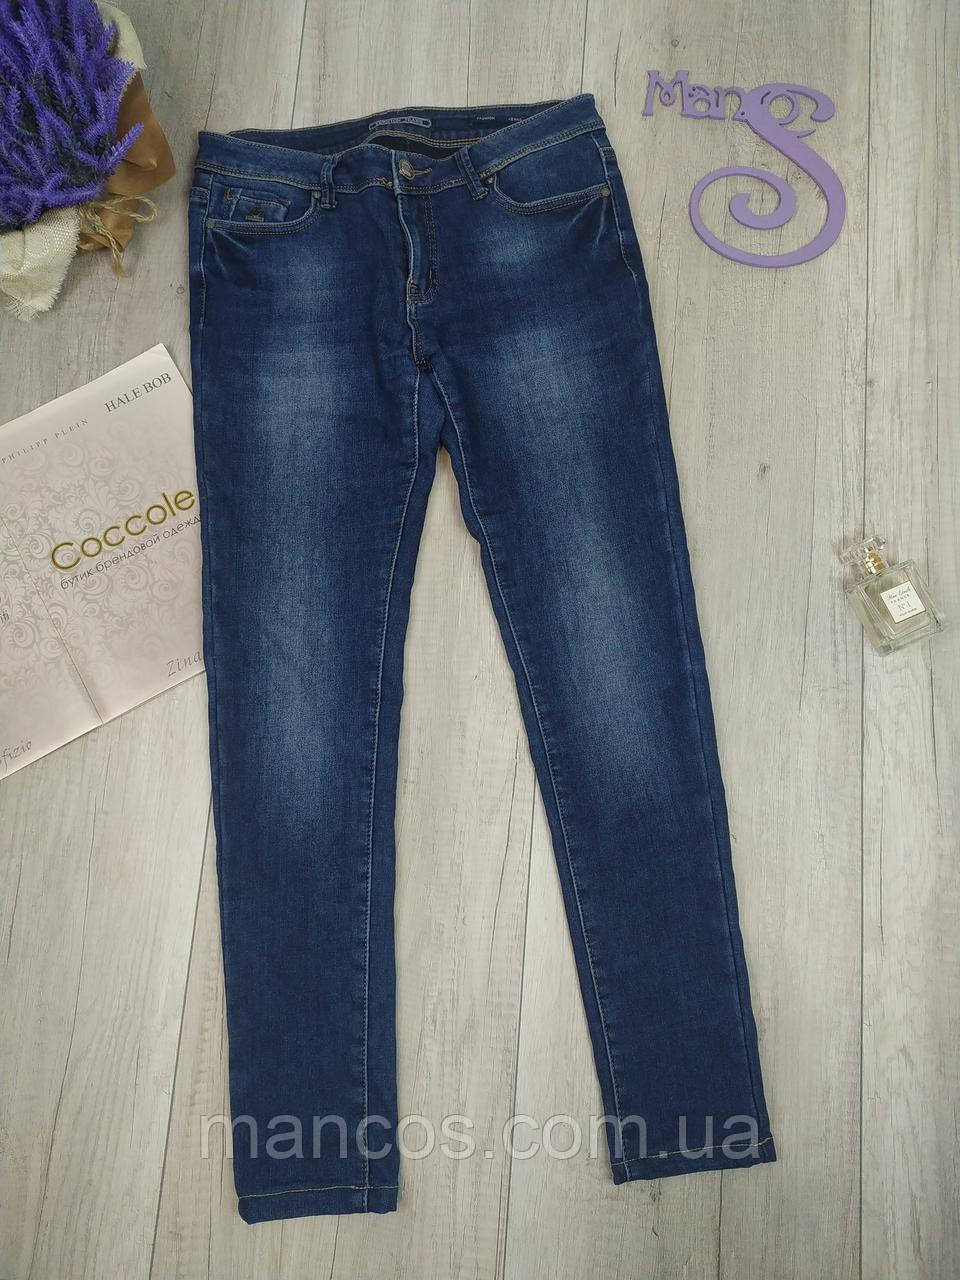 Жіночі джинси Version jeans сині Розмір 30